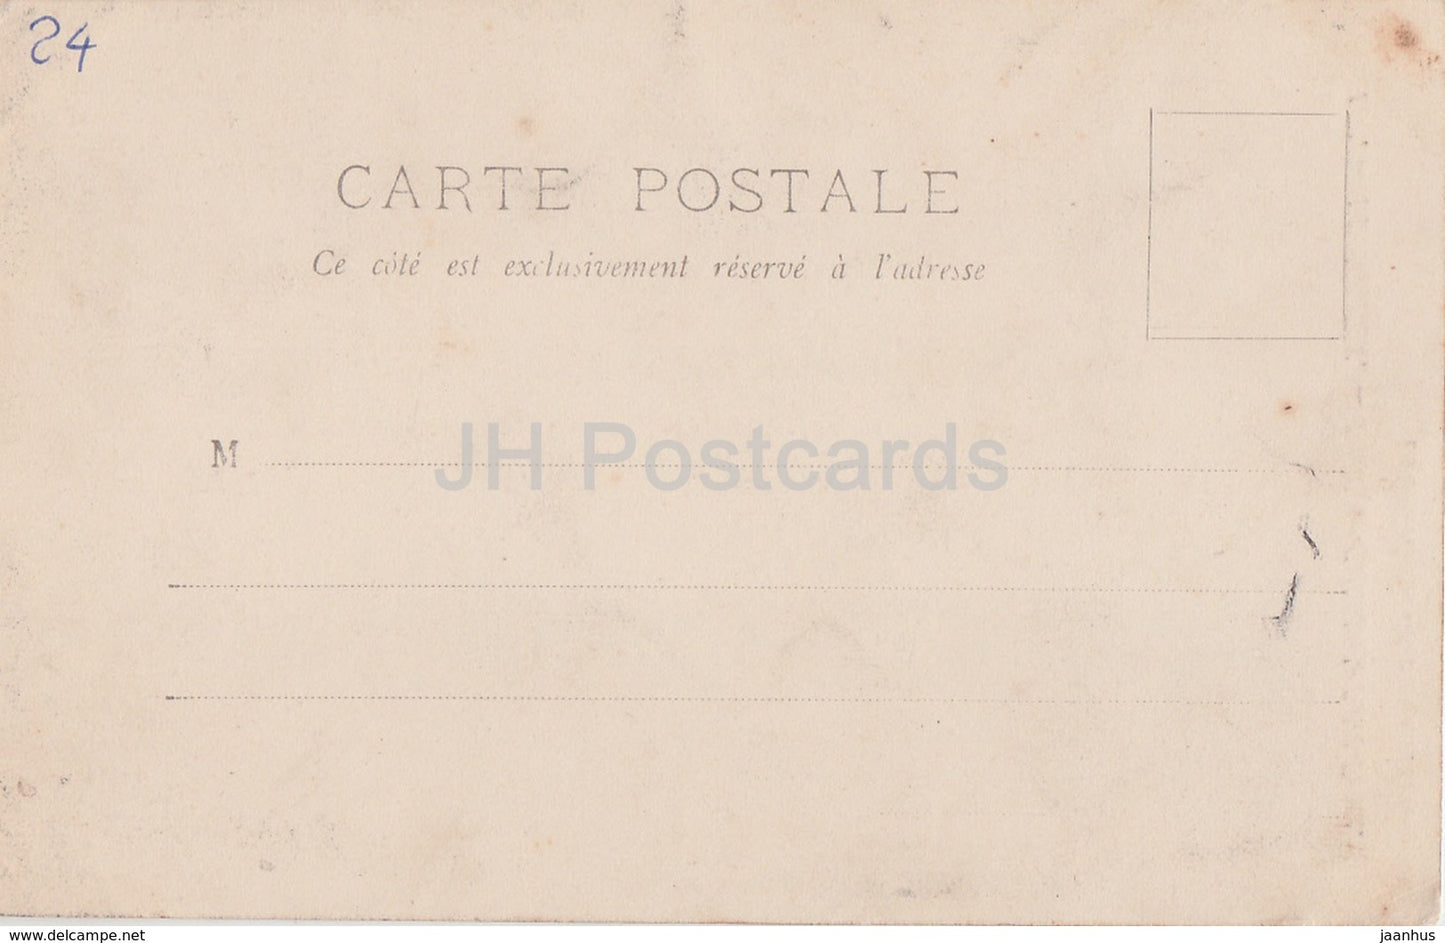 Perigueux - Basilique Cathedrale Saint Front - Kathedrale - 508 - alte Postkarte - Frankreich - unbenutzt